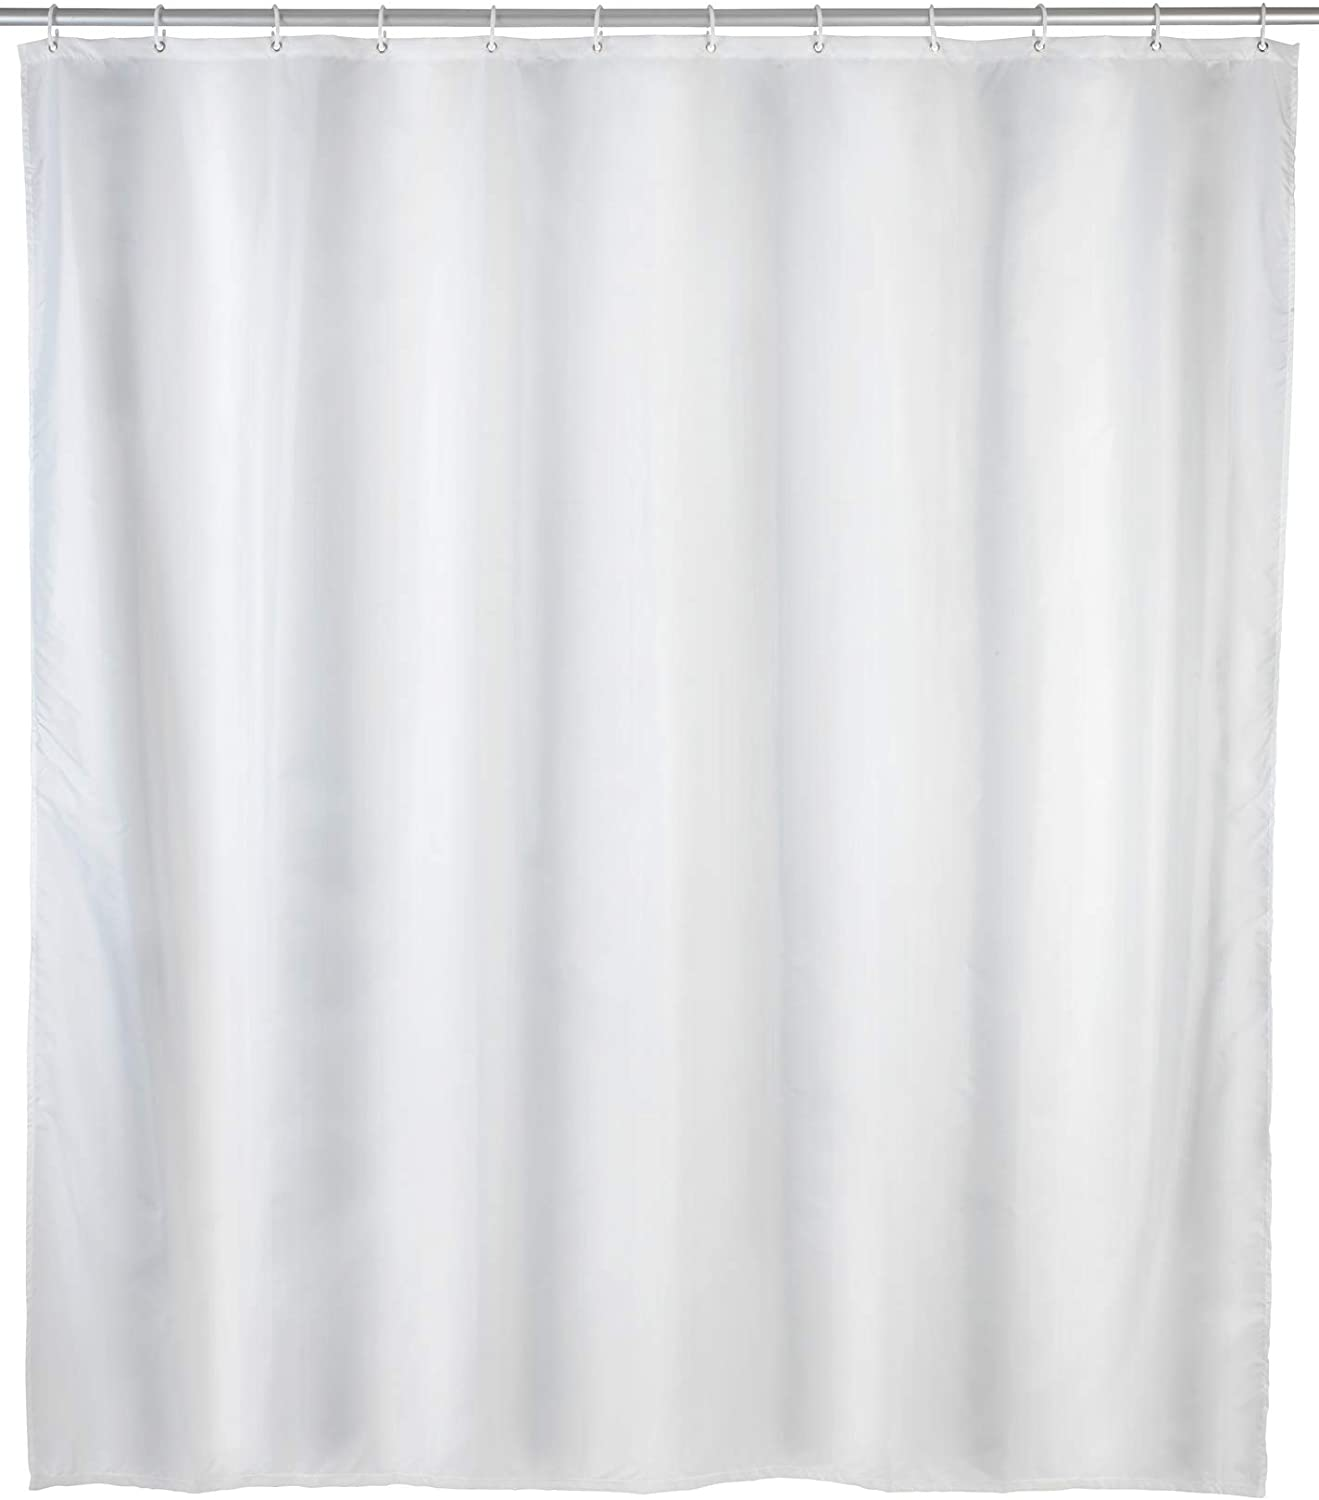 Anti-Schimmel Duschvorhang Uni White - Anti-Bakteriell, Textil, waschbar, wasserabweisend, schimmelresistent, mit 12 Duschvorhangringen, Polyester, 120 x 200 cm, Weiß